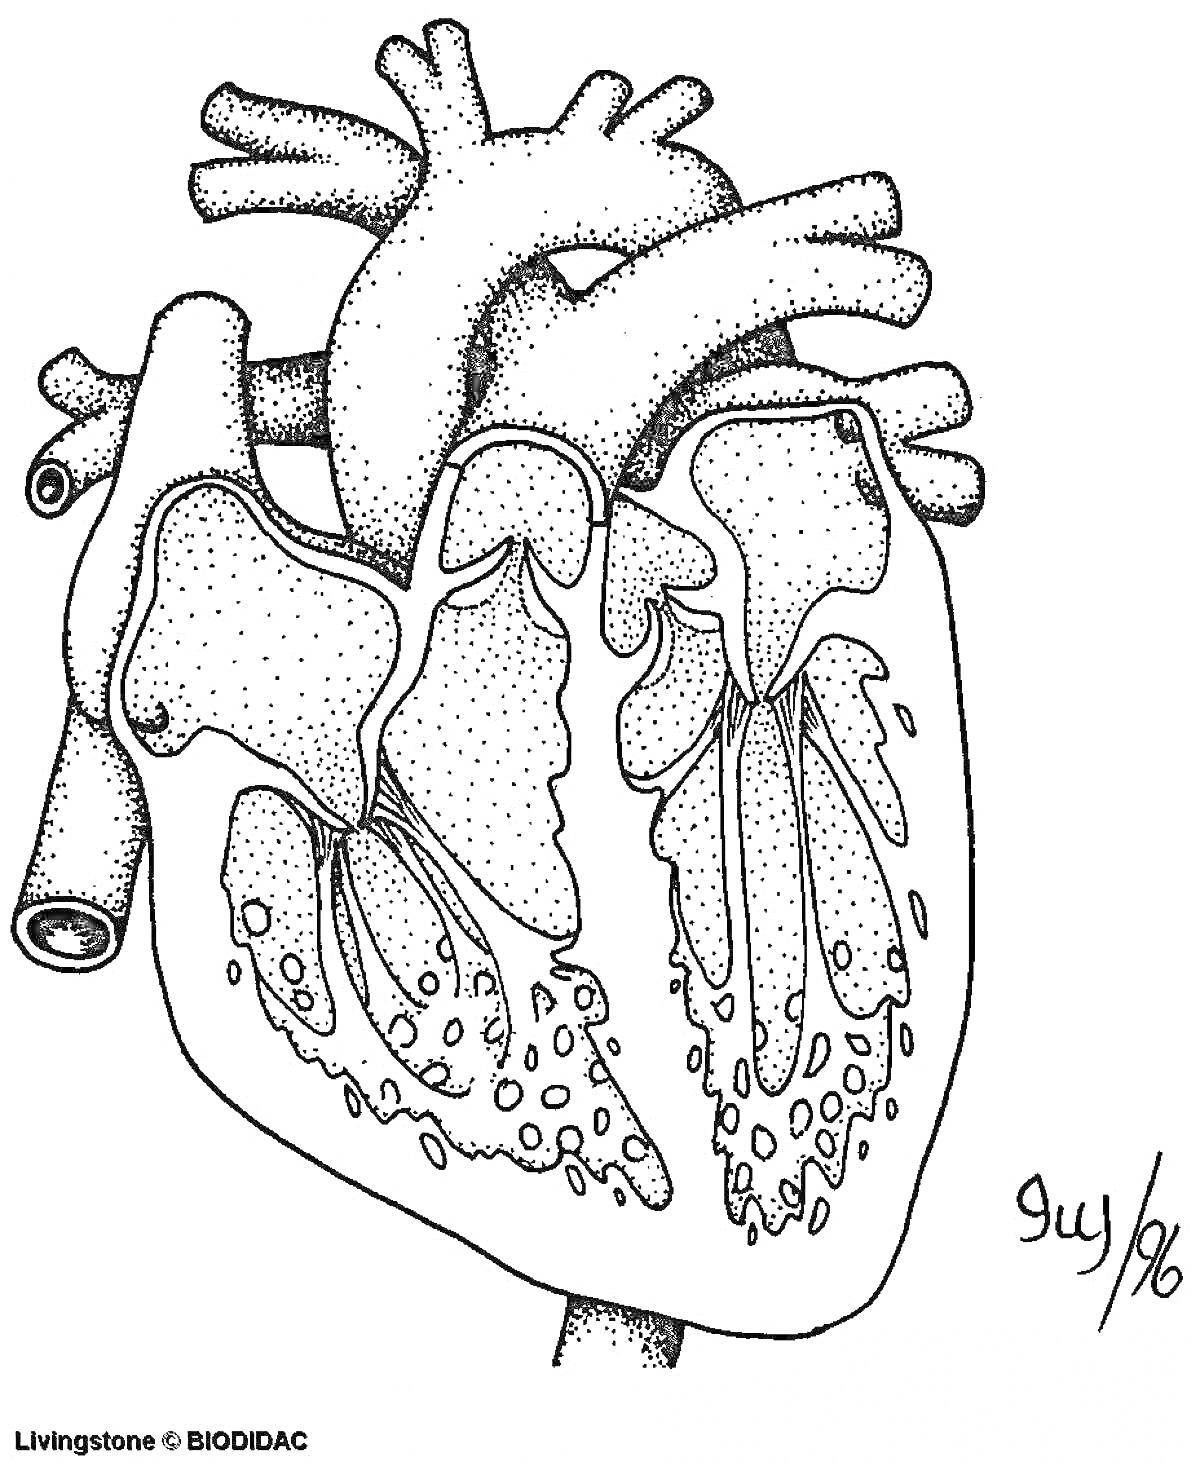 анатомическая раскраска с изображением сердца человека, изображены внутренние структуры сердца, включая крупные артерии и вены, камеры сердца, предсердия и желудочки